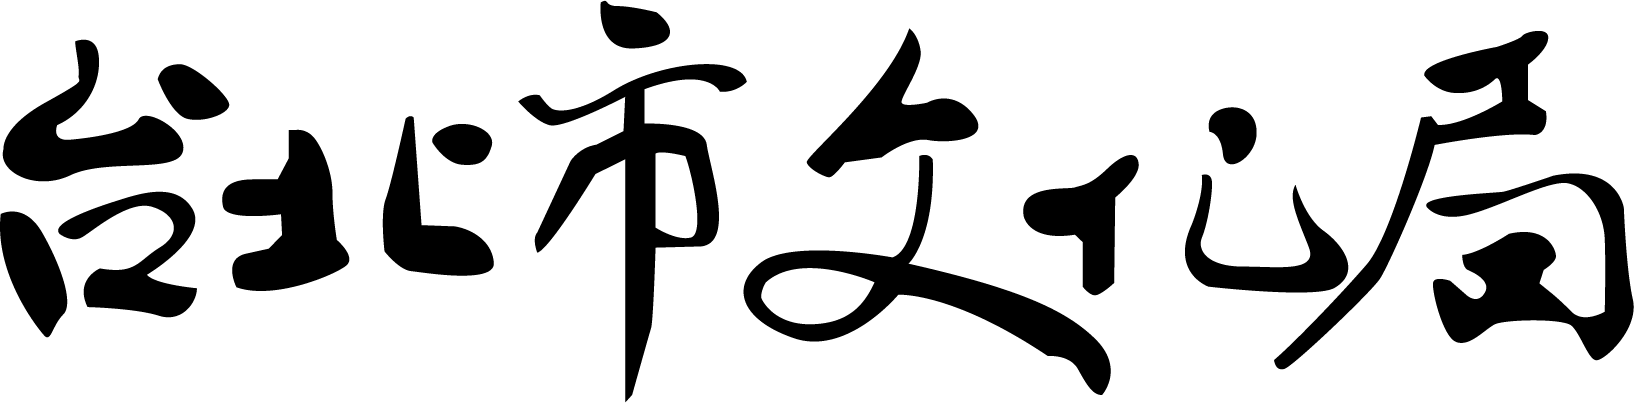 台北市文化局logo [轉換]